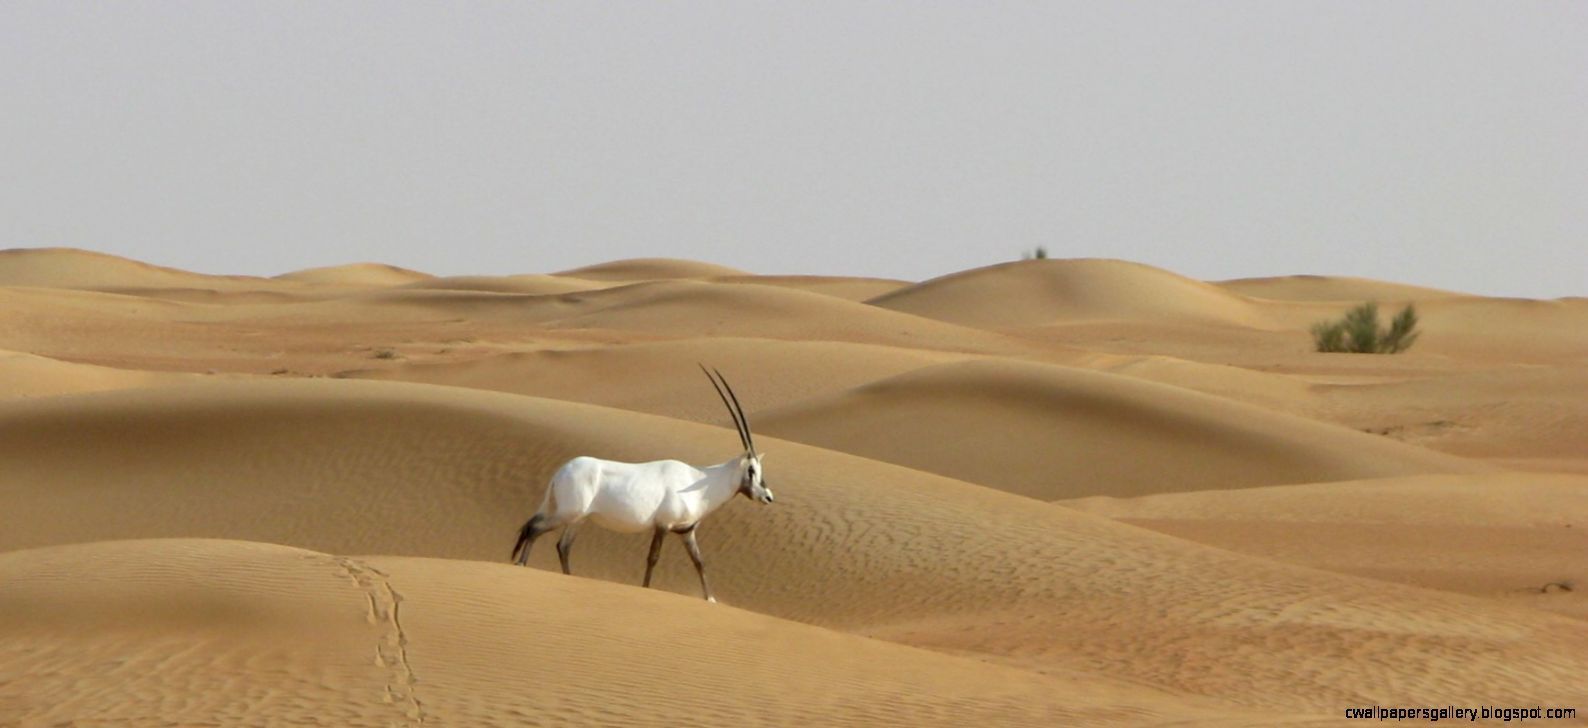 Arabian Desert oasis. Arabian Desert Animals. Wallpaper Gallery. Desert animals, Dubai desert, Arabians